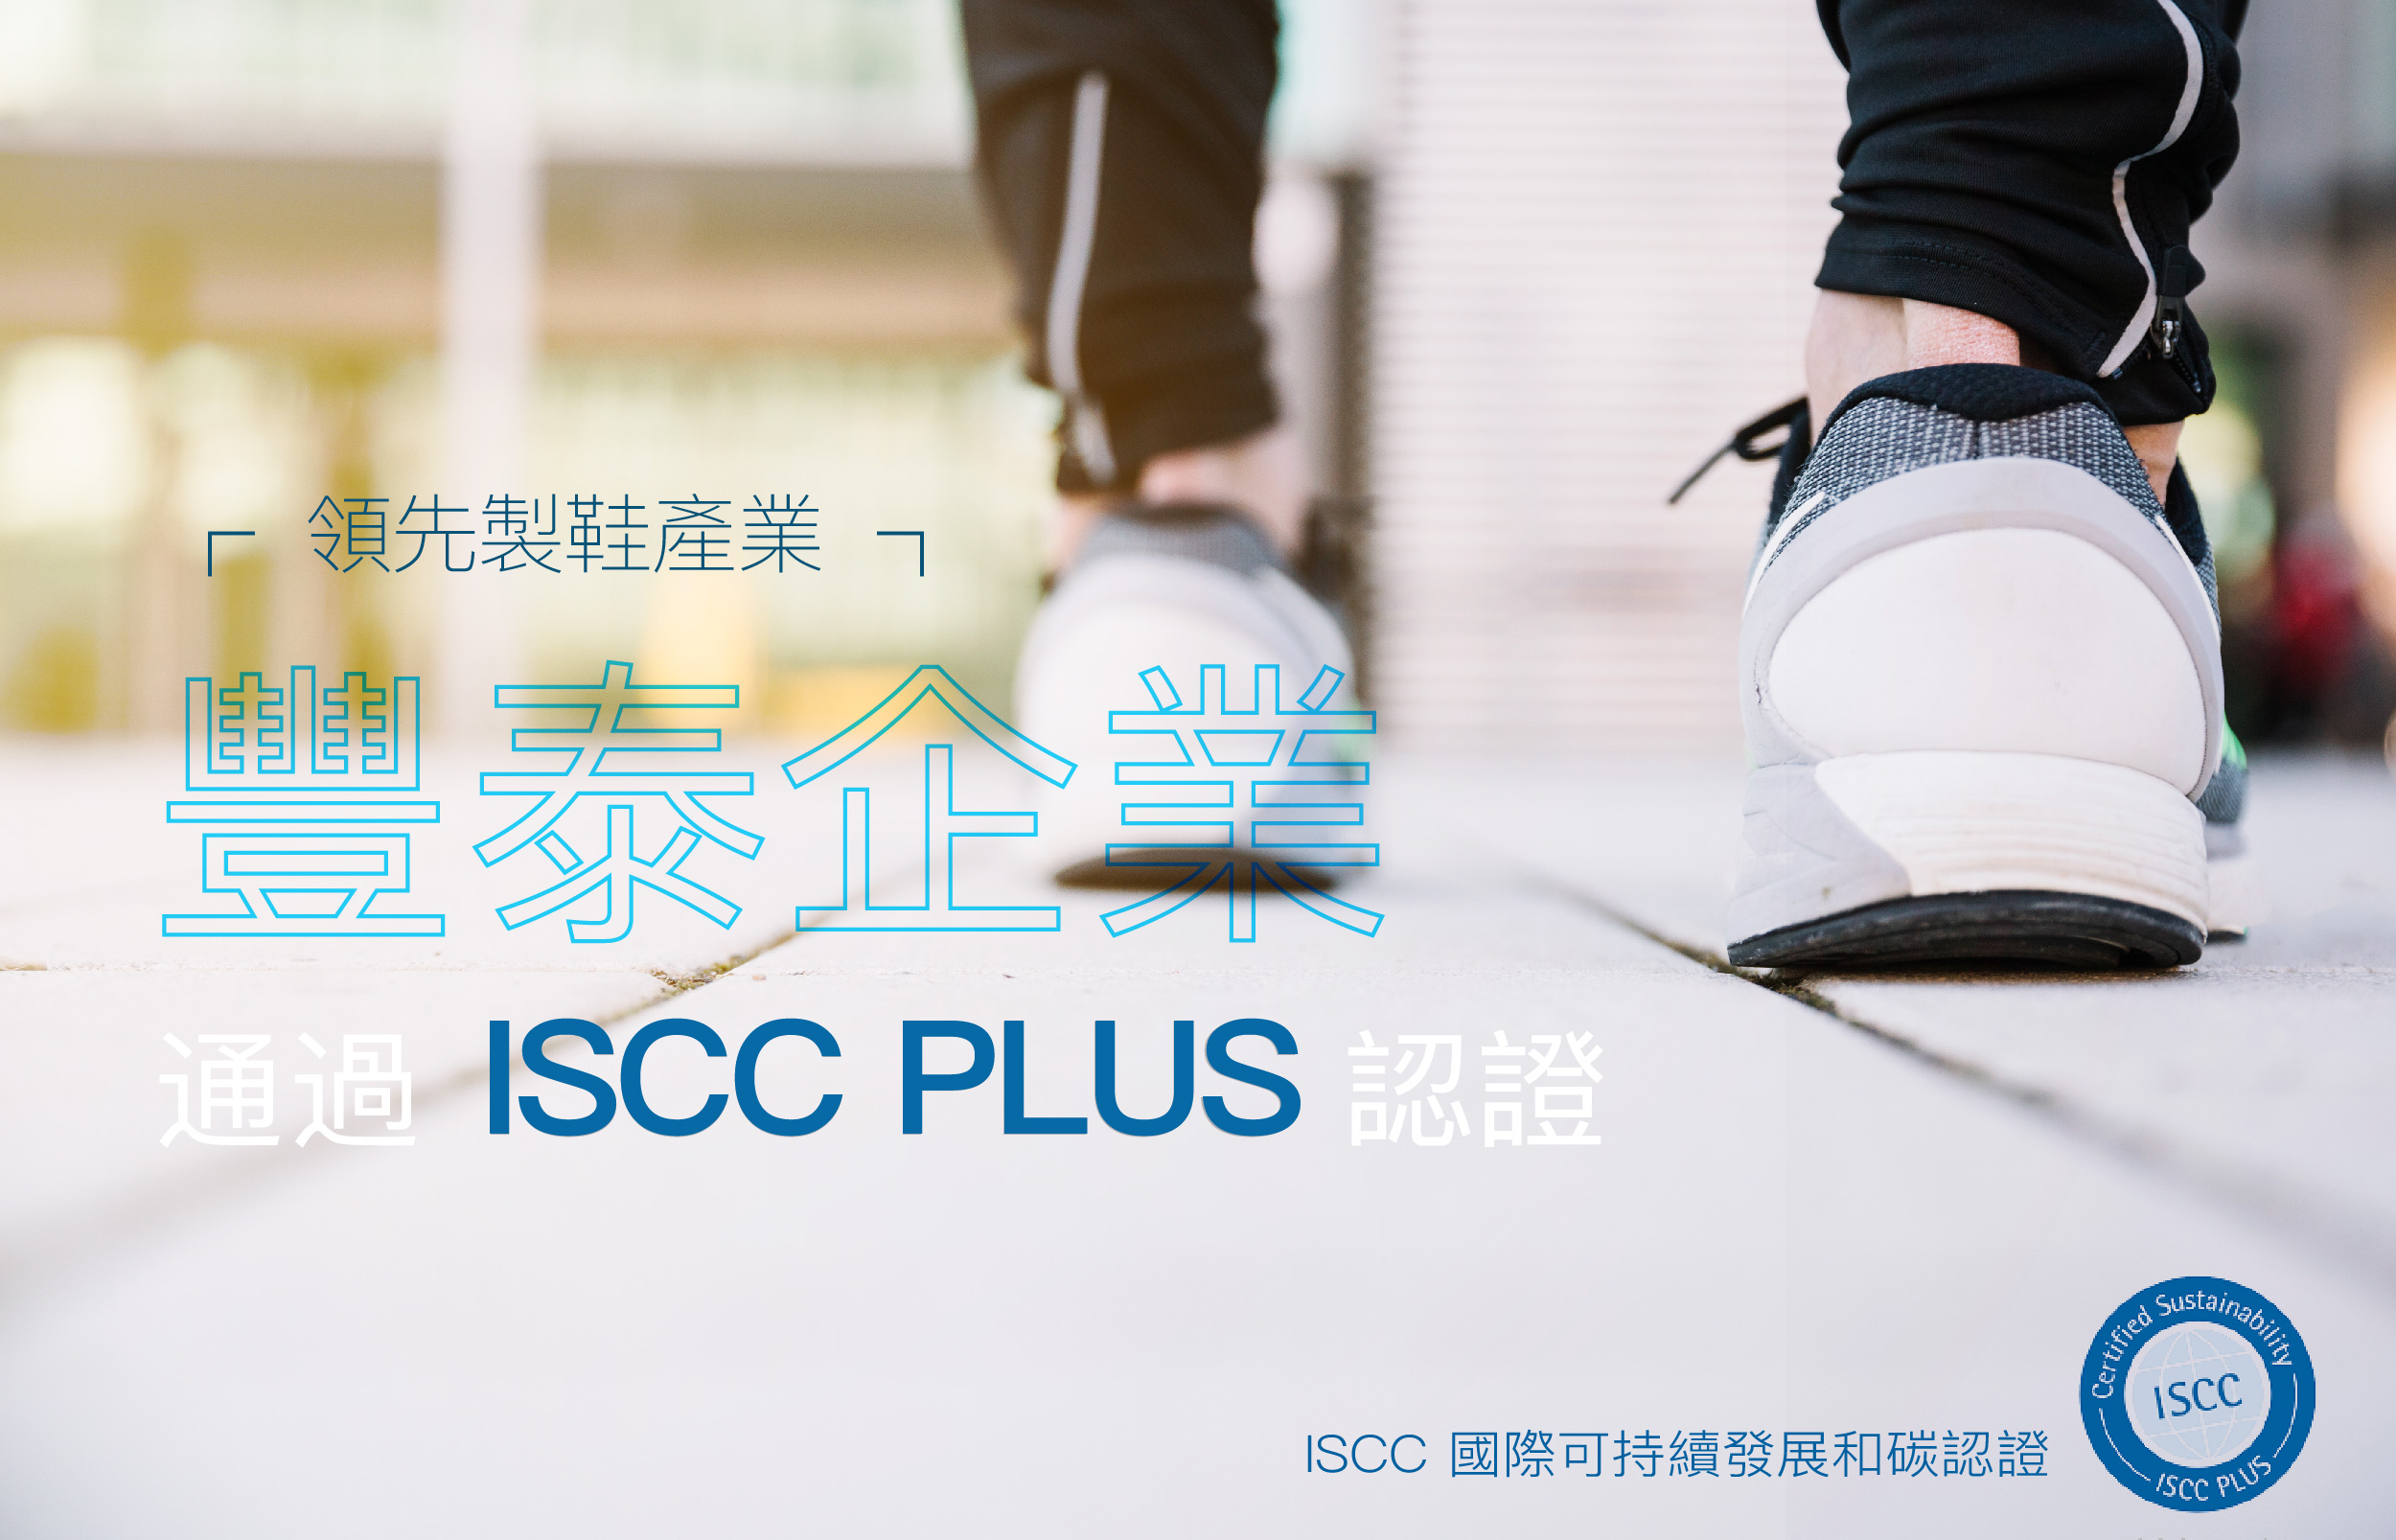 製鞋業的台積電 - 豐泰企業通過 ISCC PLUS 認證